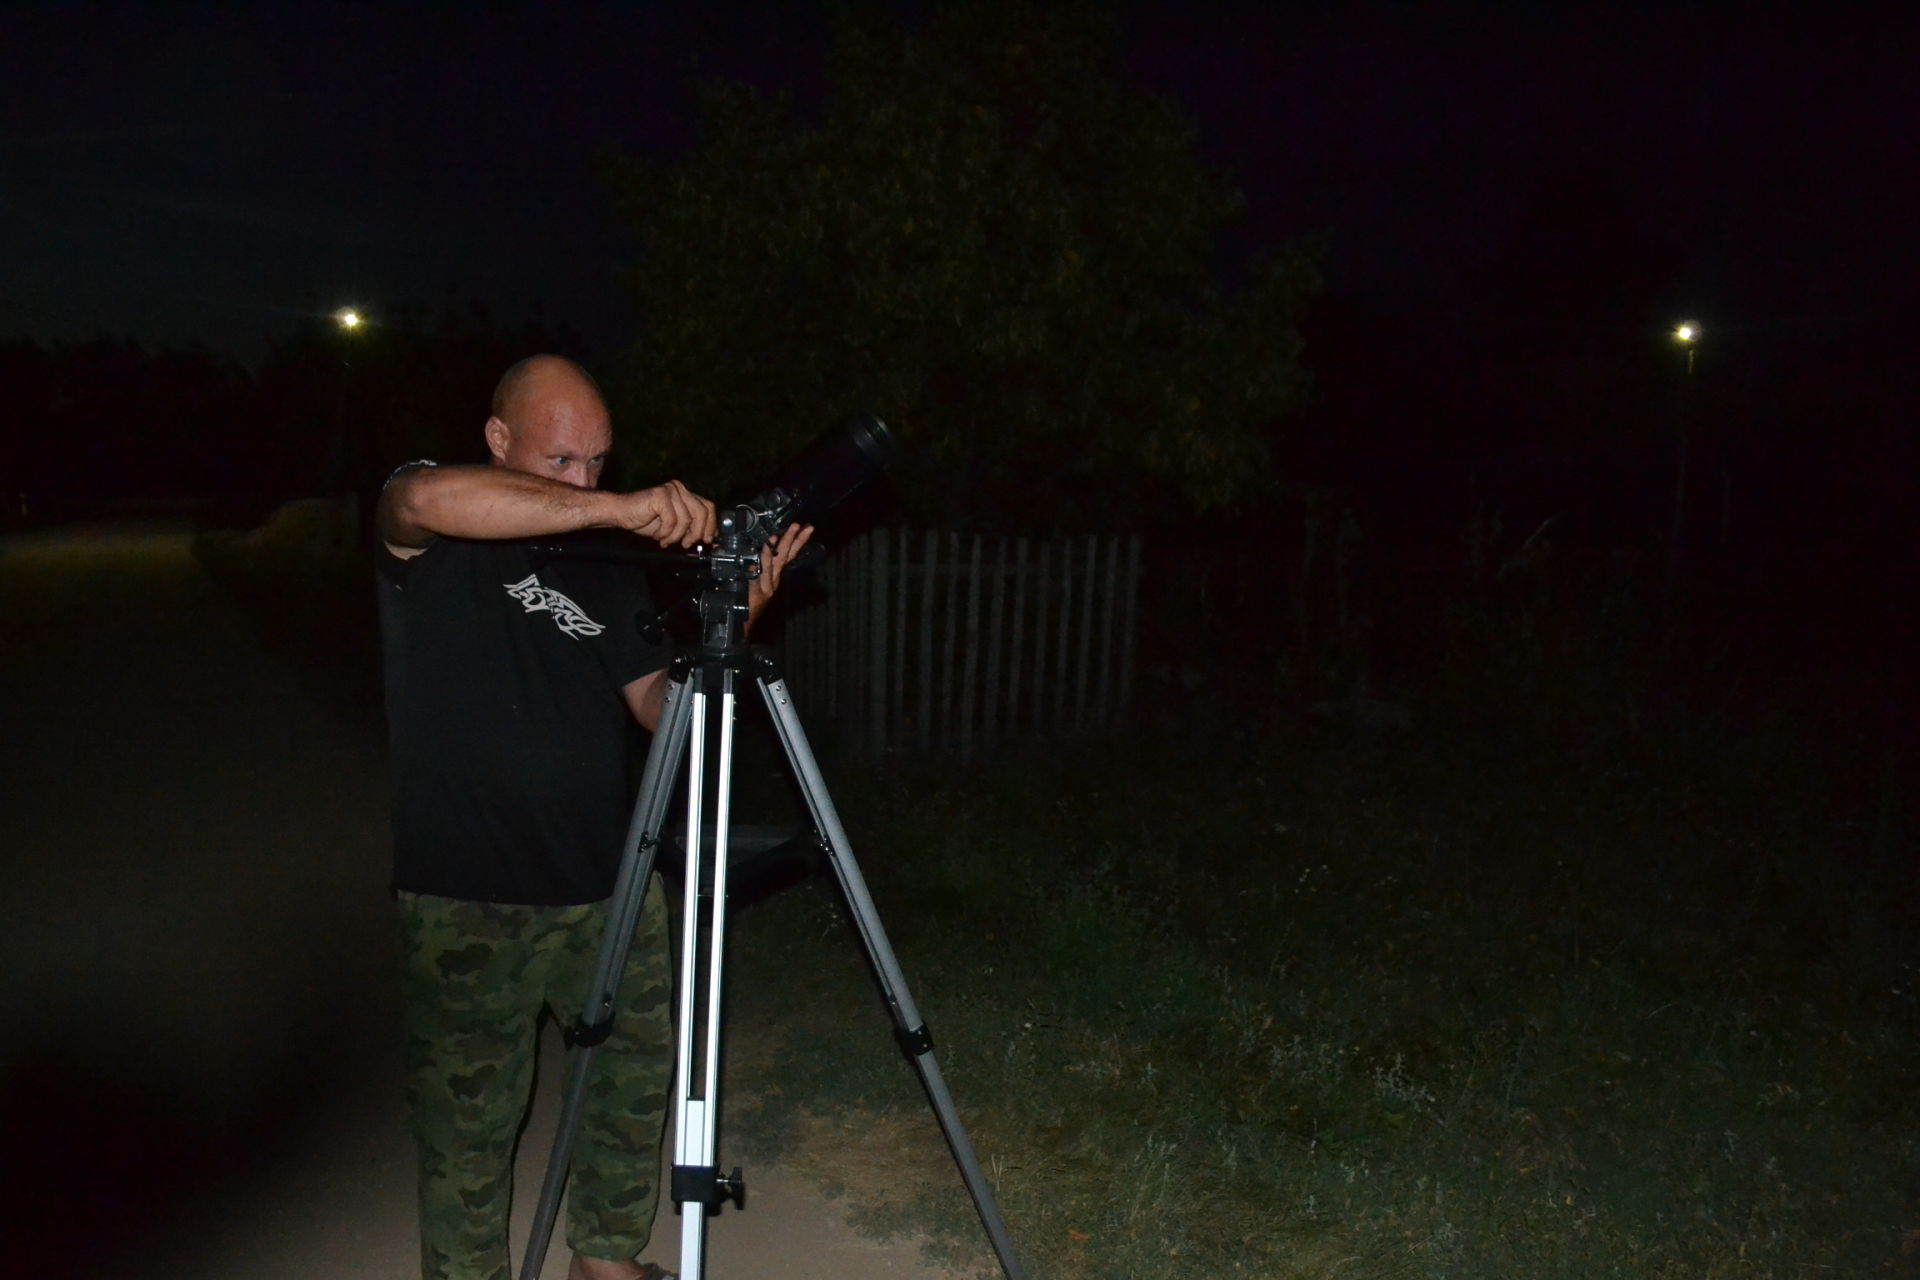 Заинцы семьями изучают ночное небо с помощью телескопа